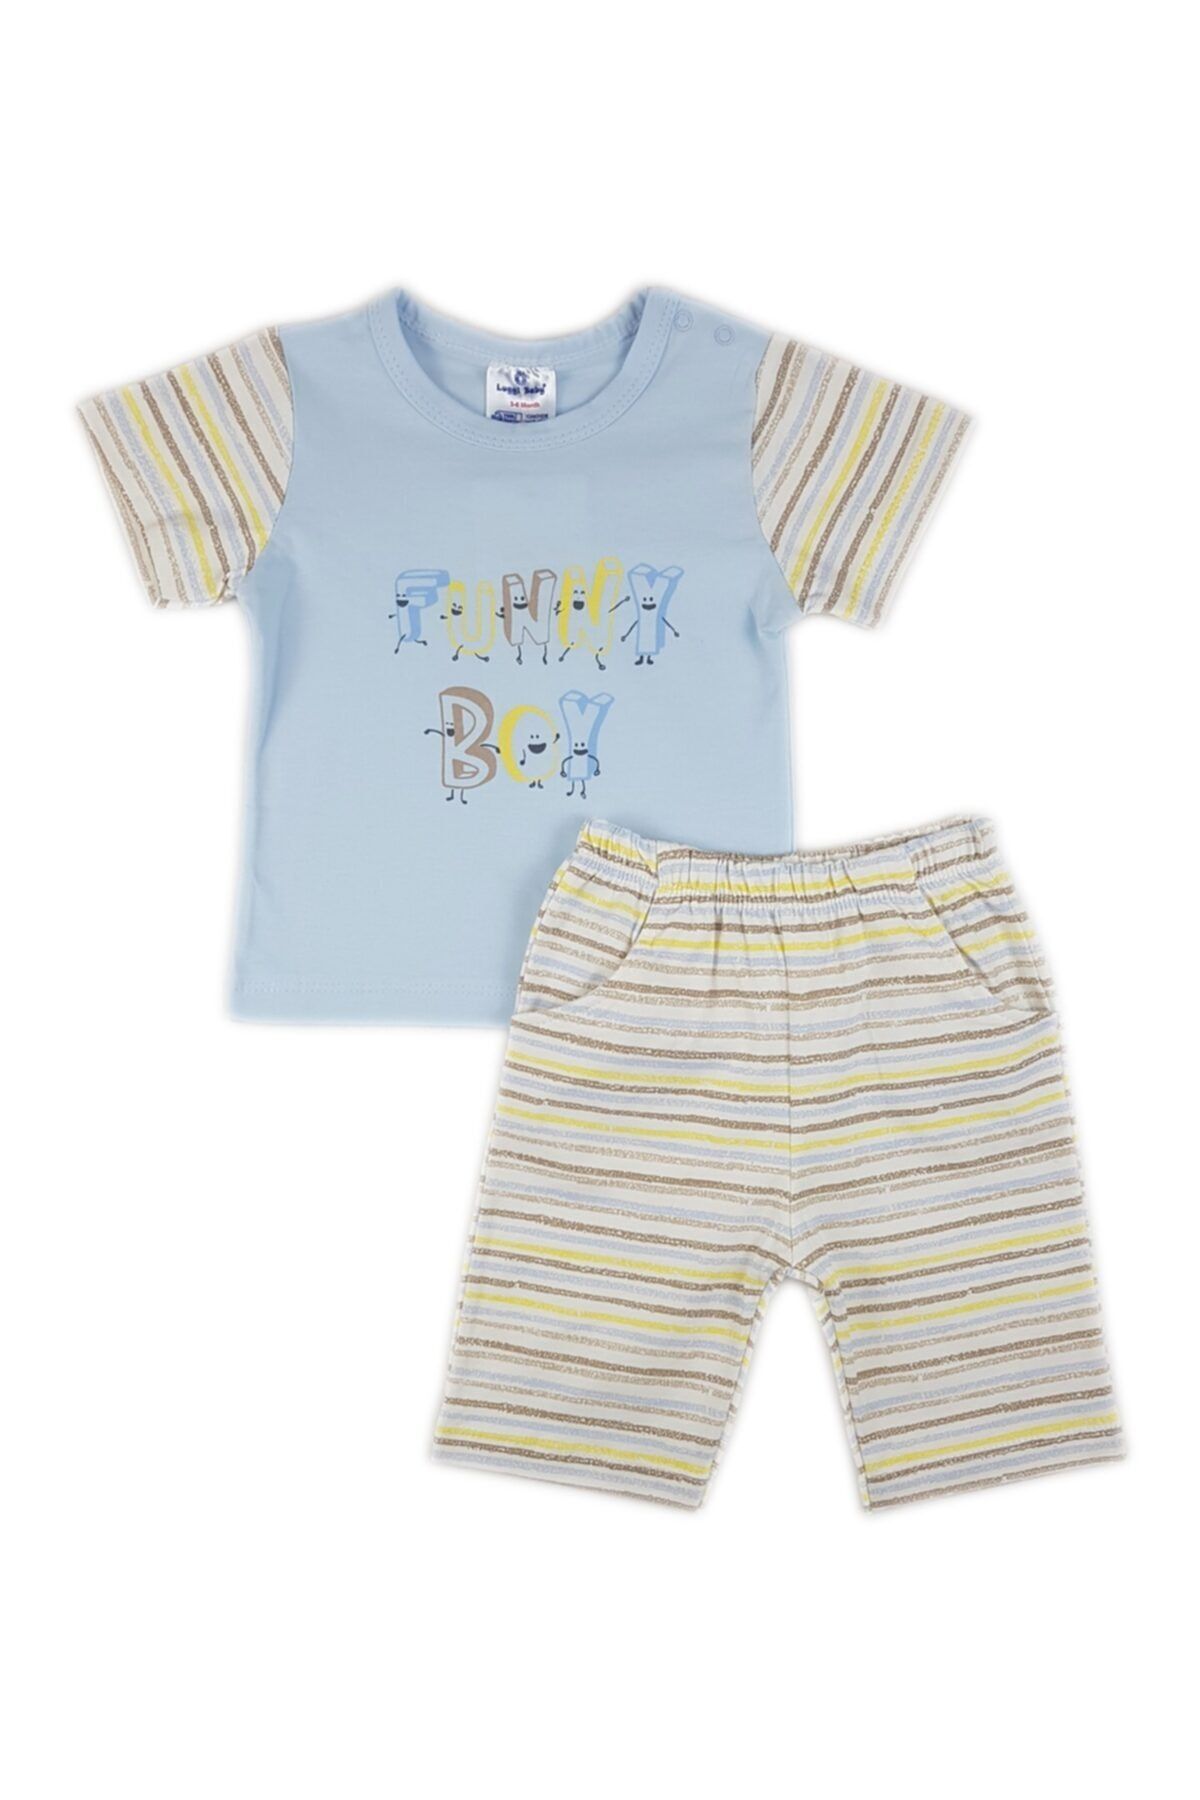 Luggi Baby Erkek Mavi Funny Boy Kısa Kollu T-shirt Ve Şort Takım Lgb-5426